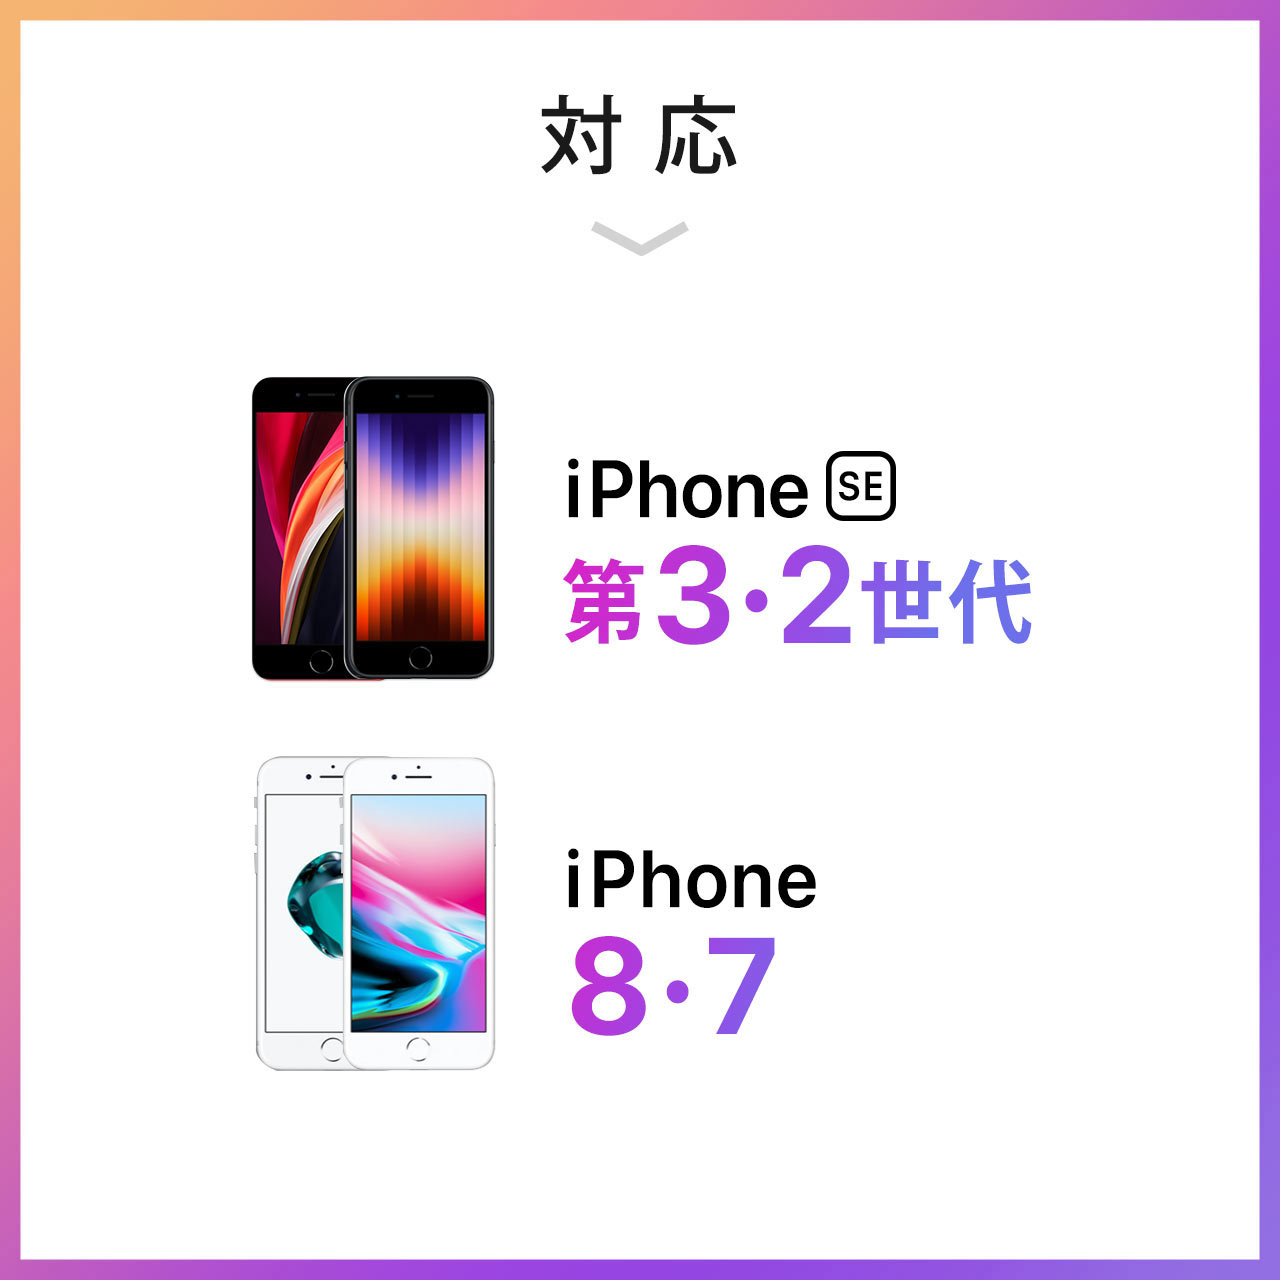 iPhone SE 3/2/iPhone 8/7 h ϏՌP[X IP68 Sʕی 200-SPC028WP